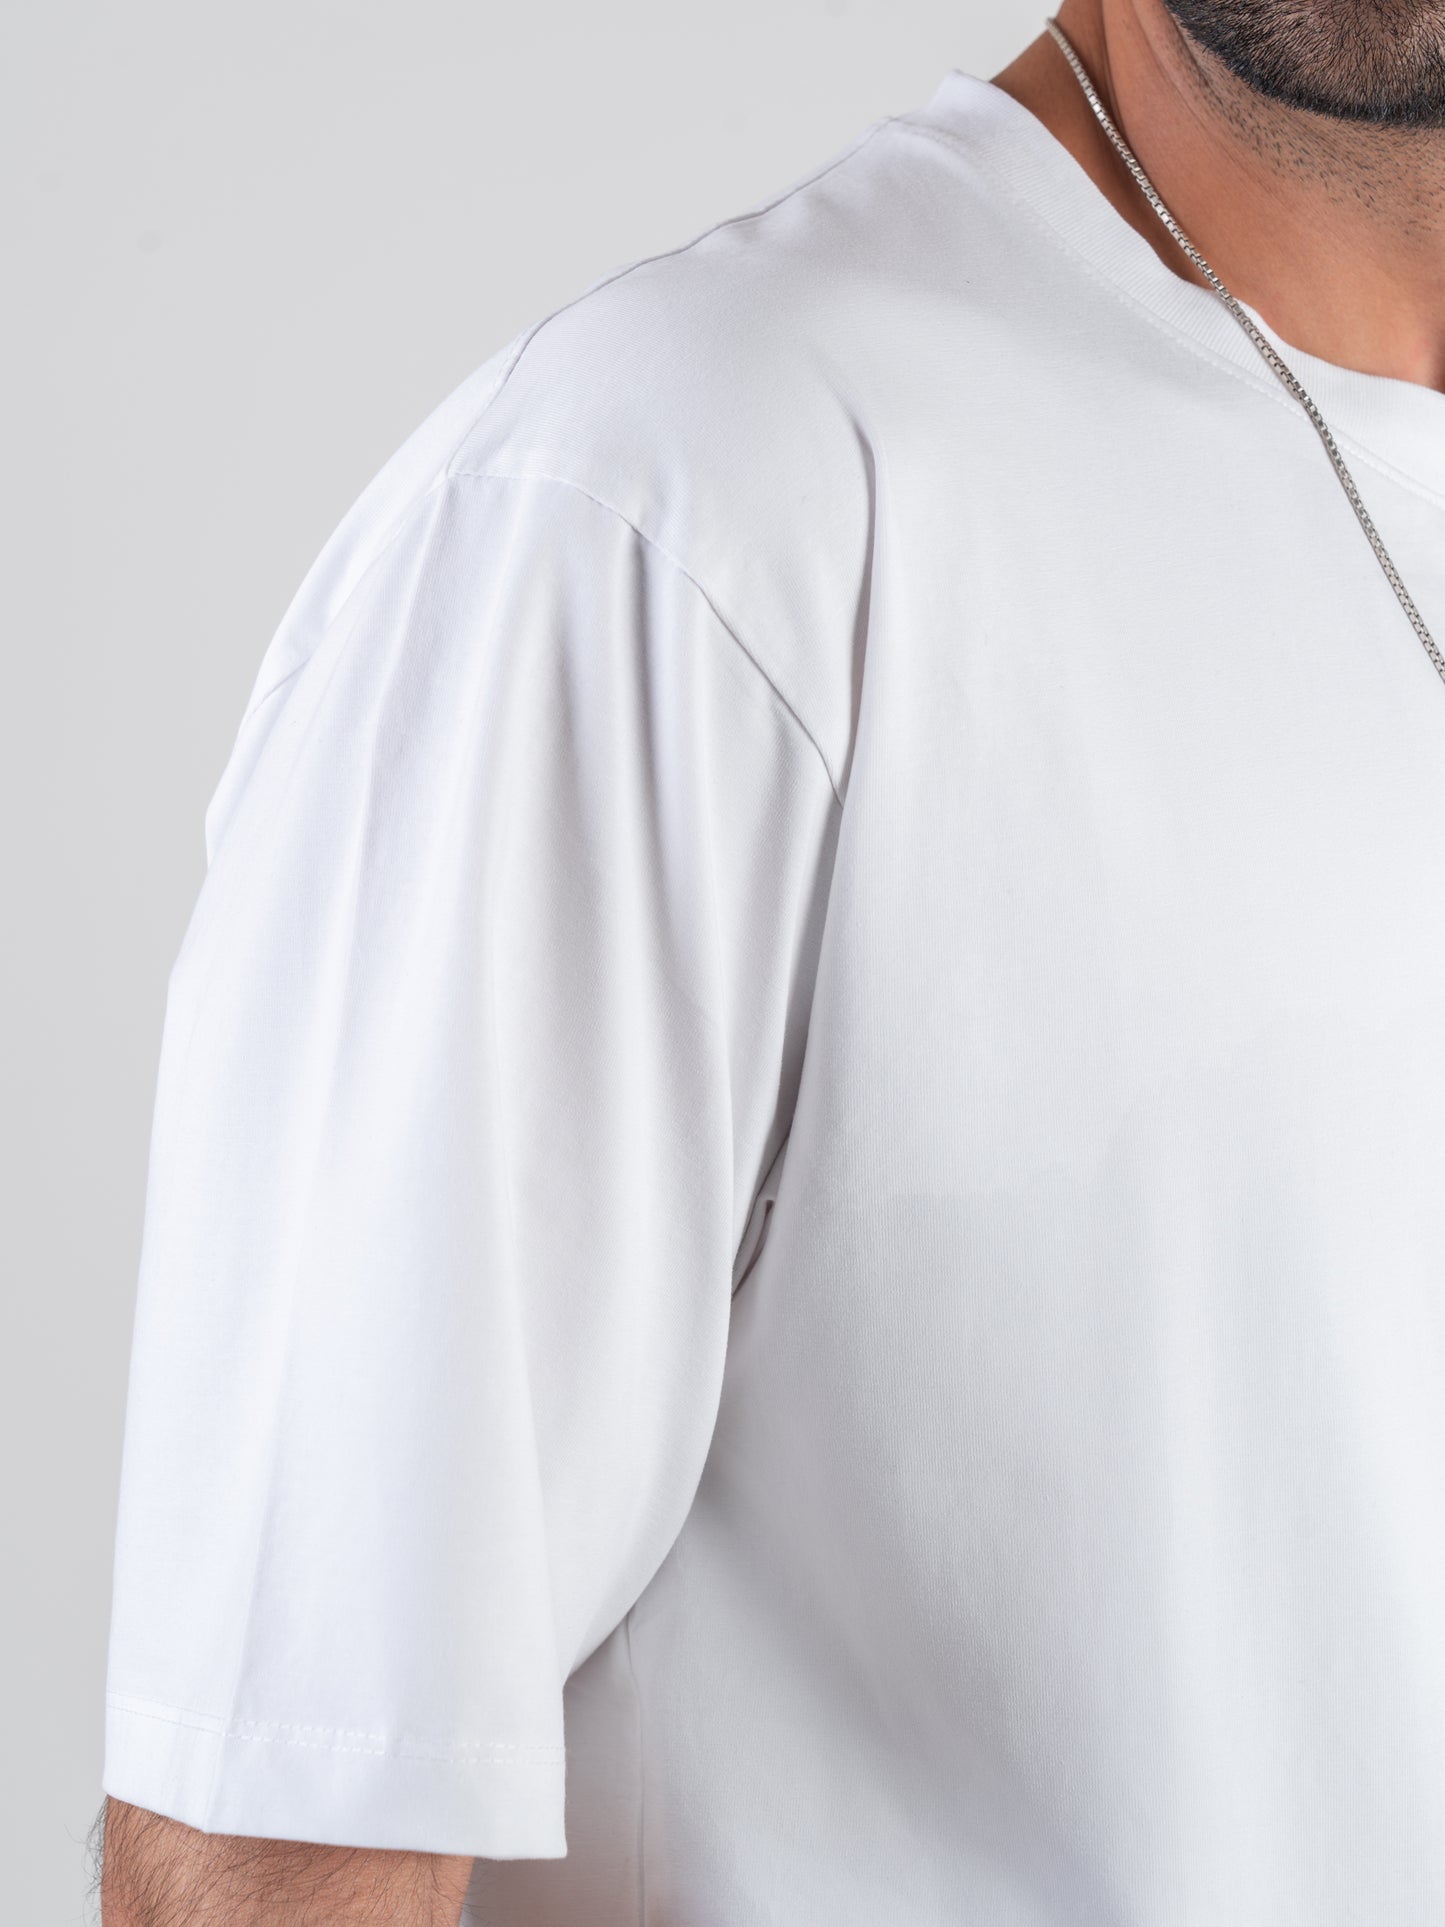 Classic Plain White Dropshoulder T-shirt